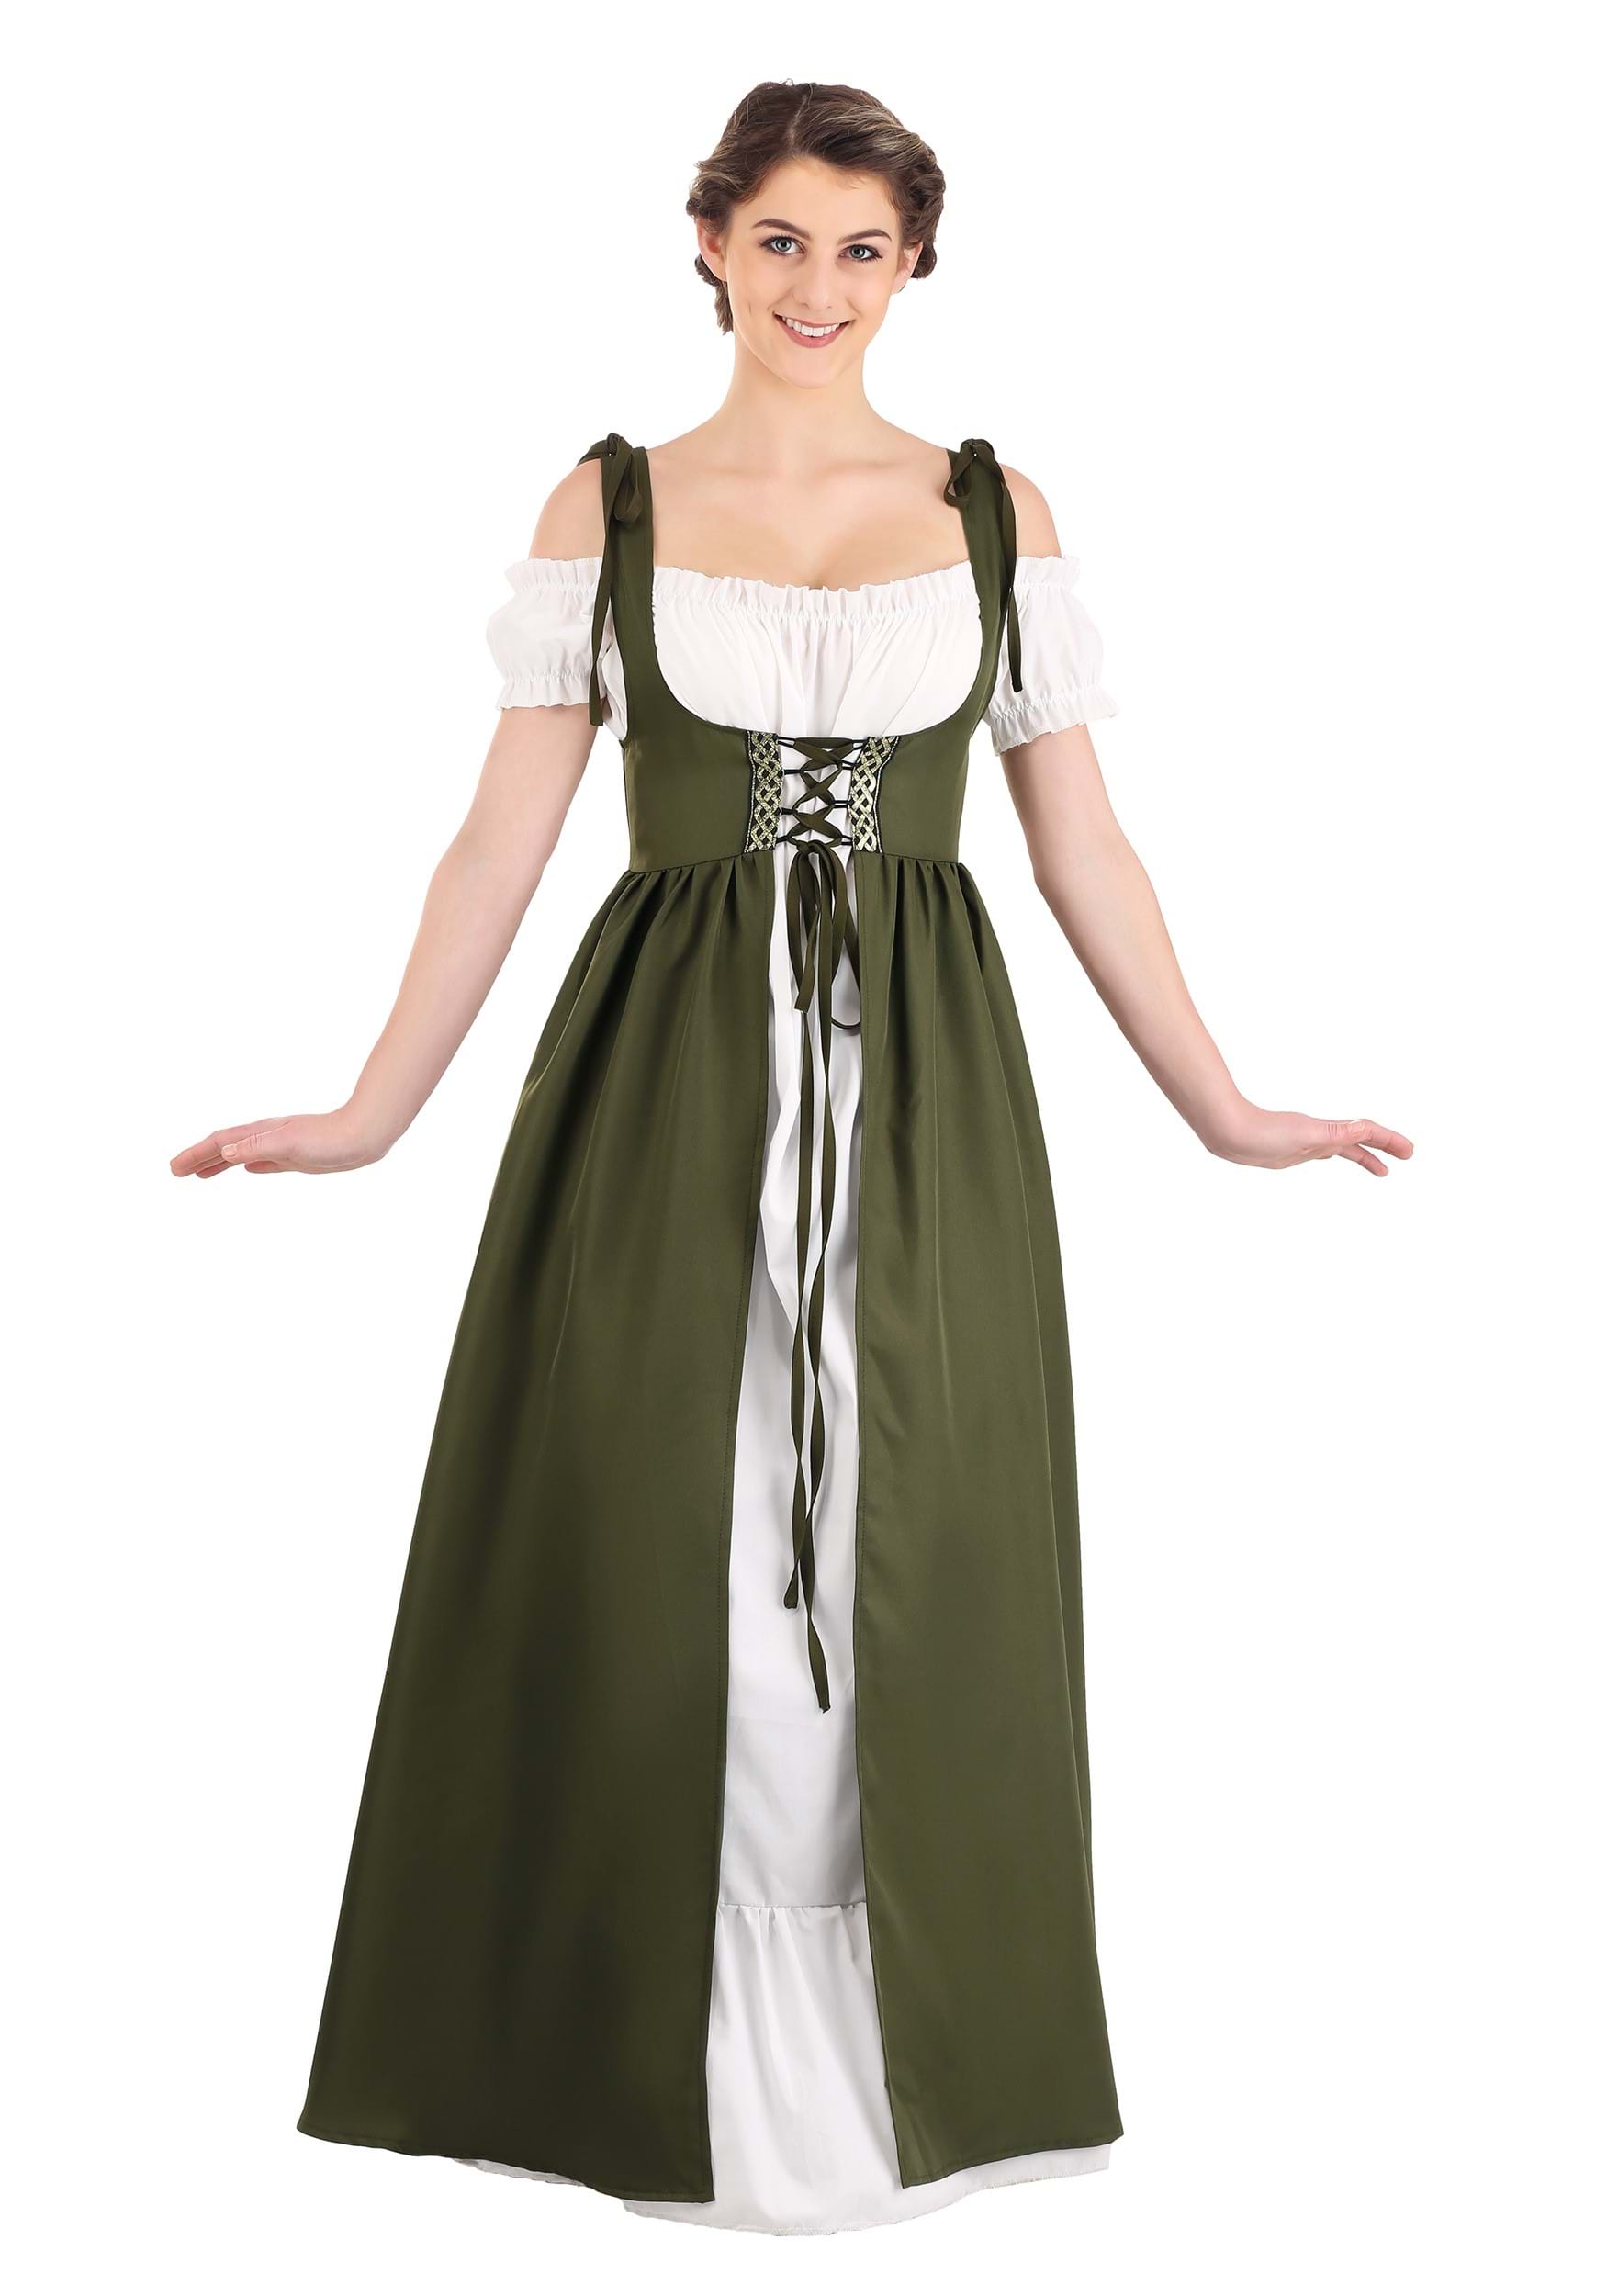 Women's Celtic Renaissance Costume - image 1 of 6